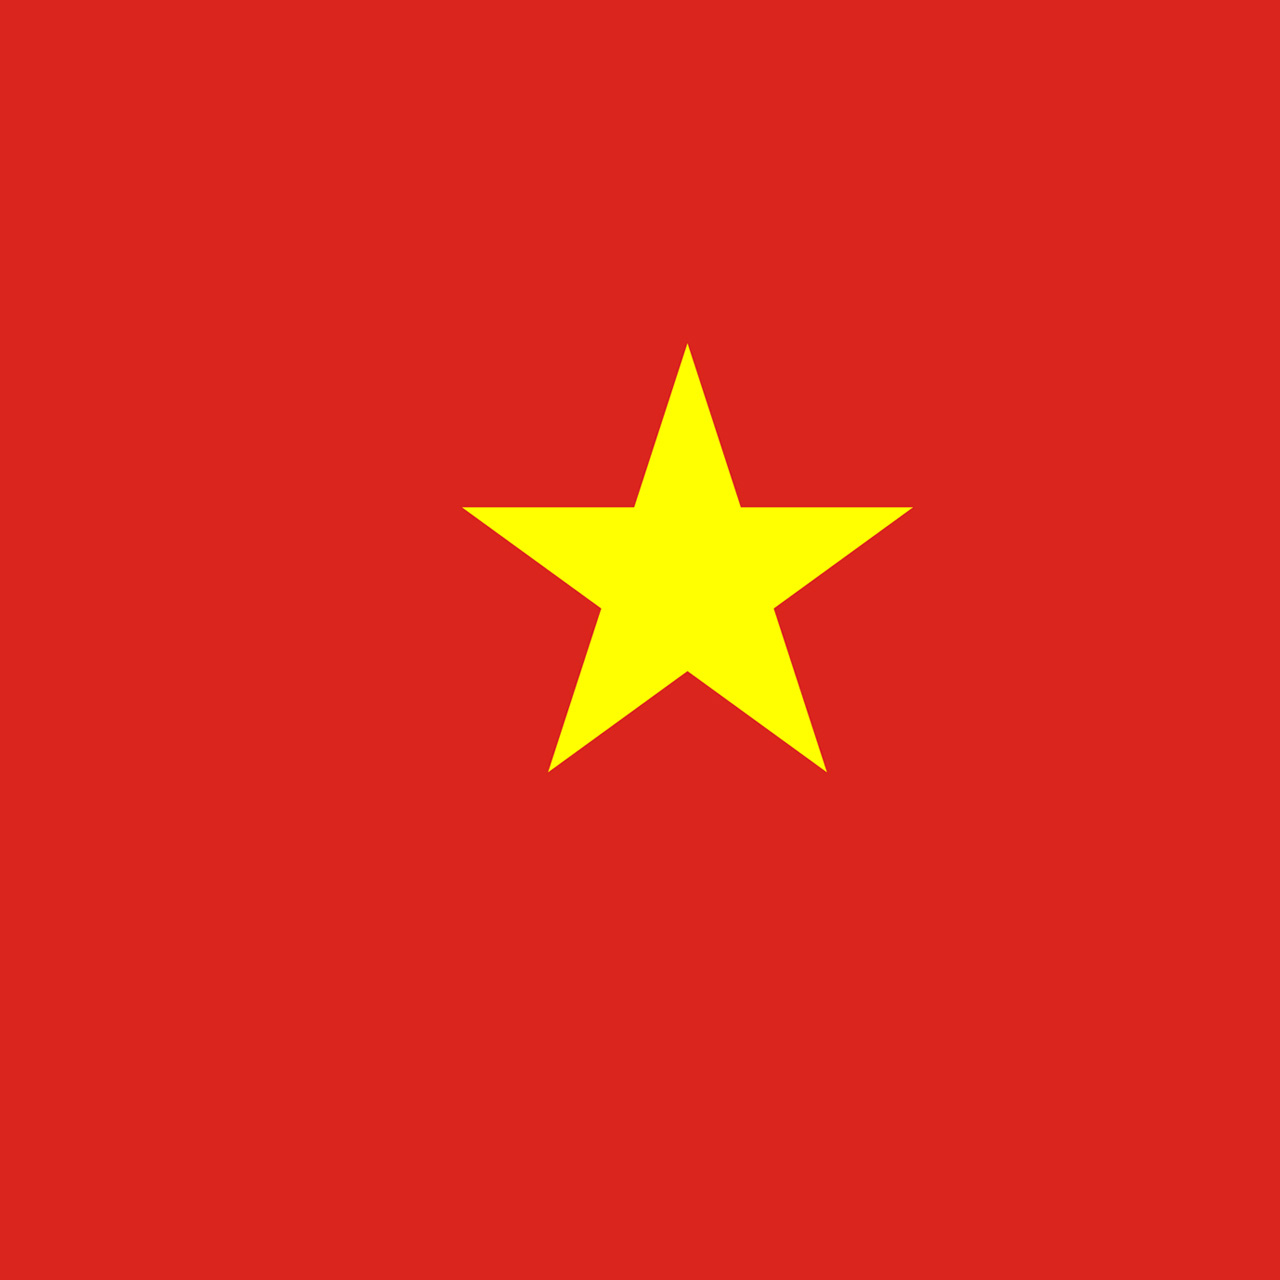 https://neelikon.co.uk/wp-content/uploads/2022/01/Testimonial-Vietnam.jpg